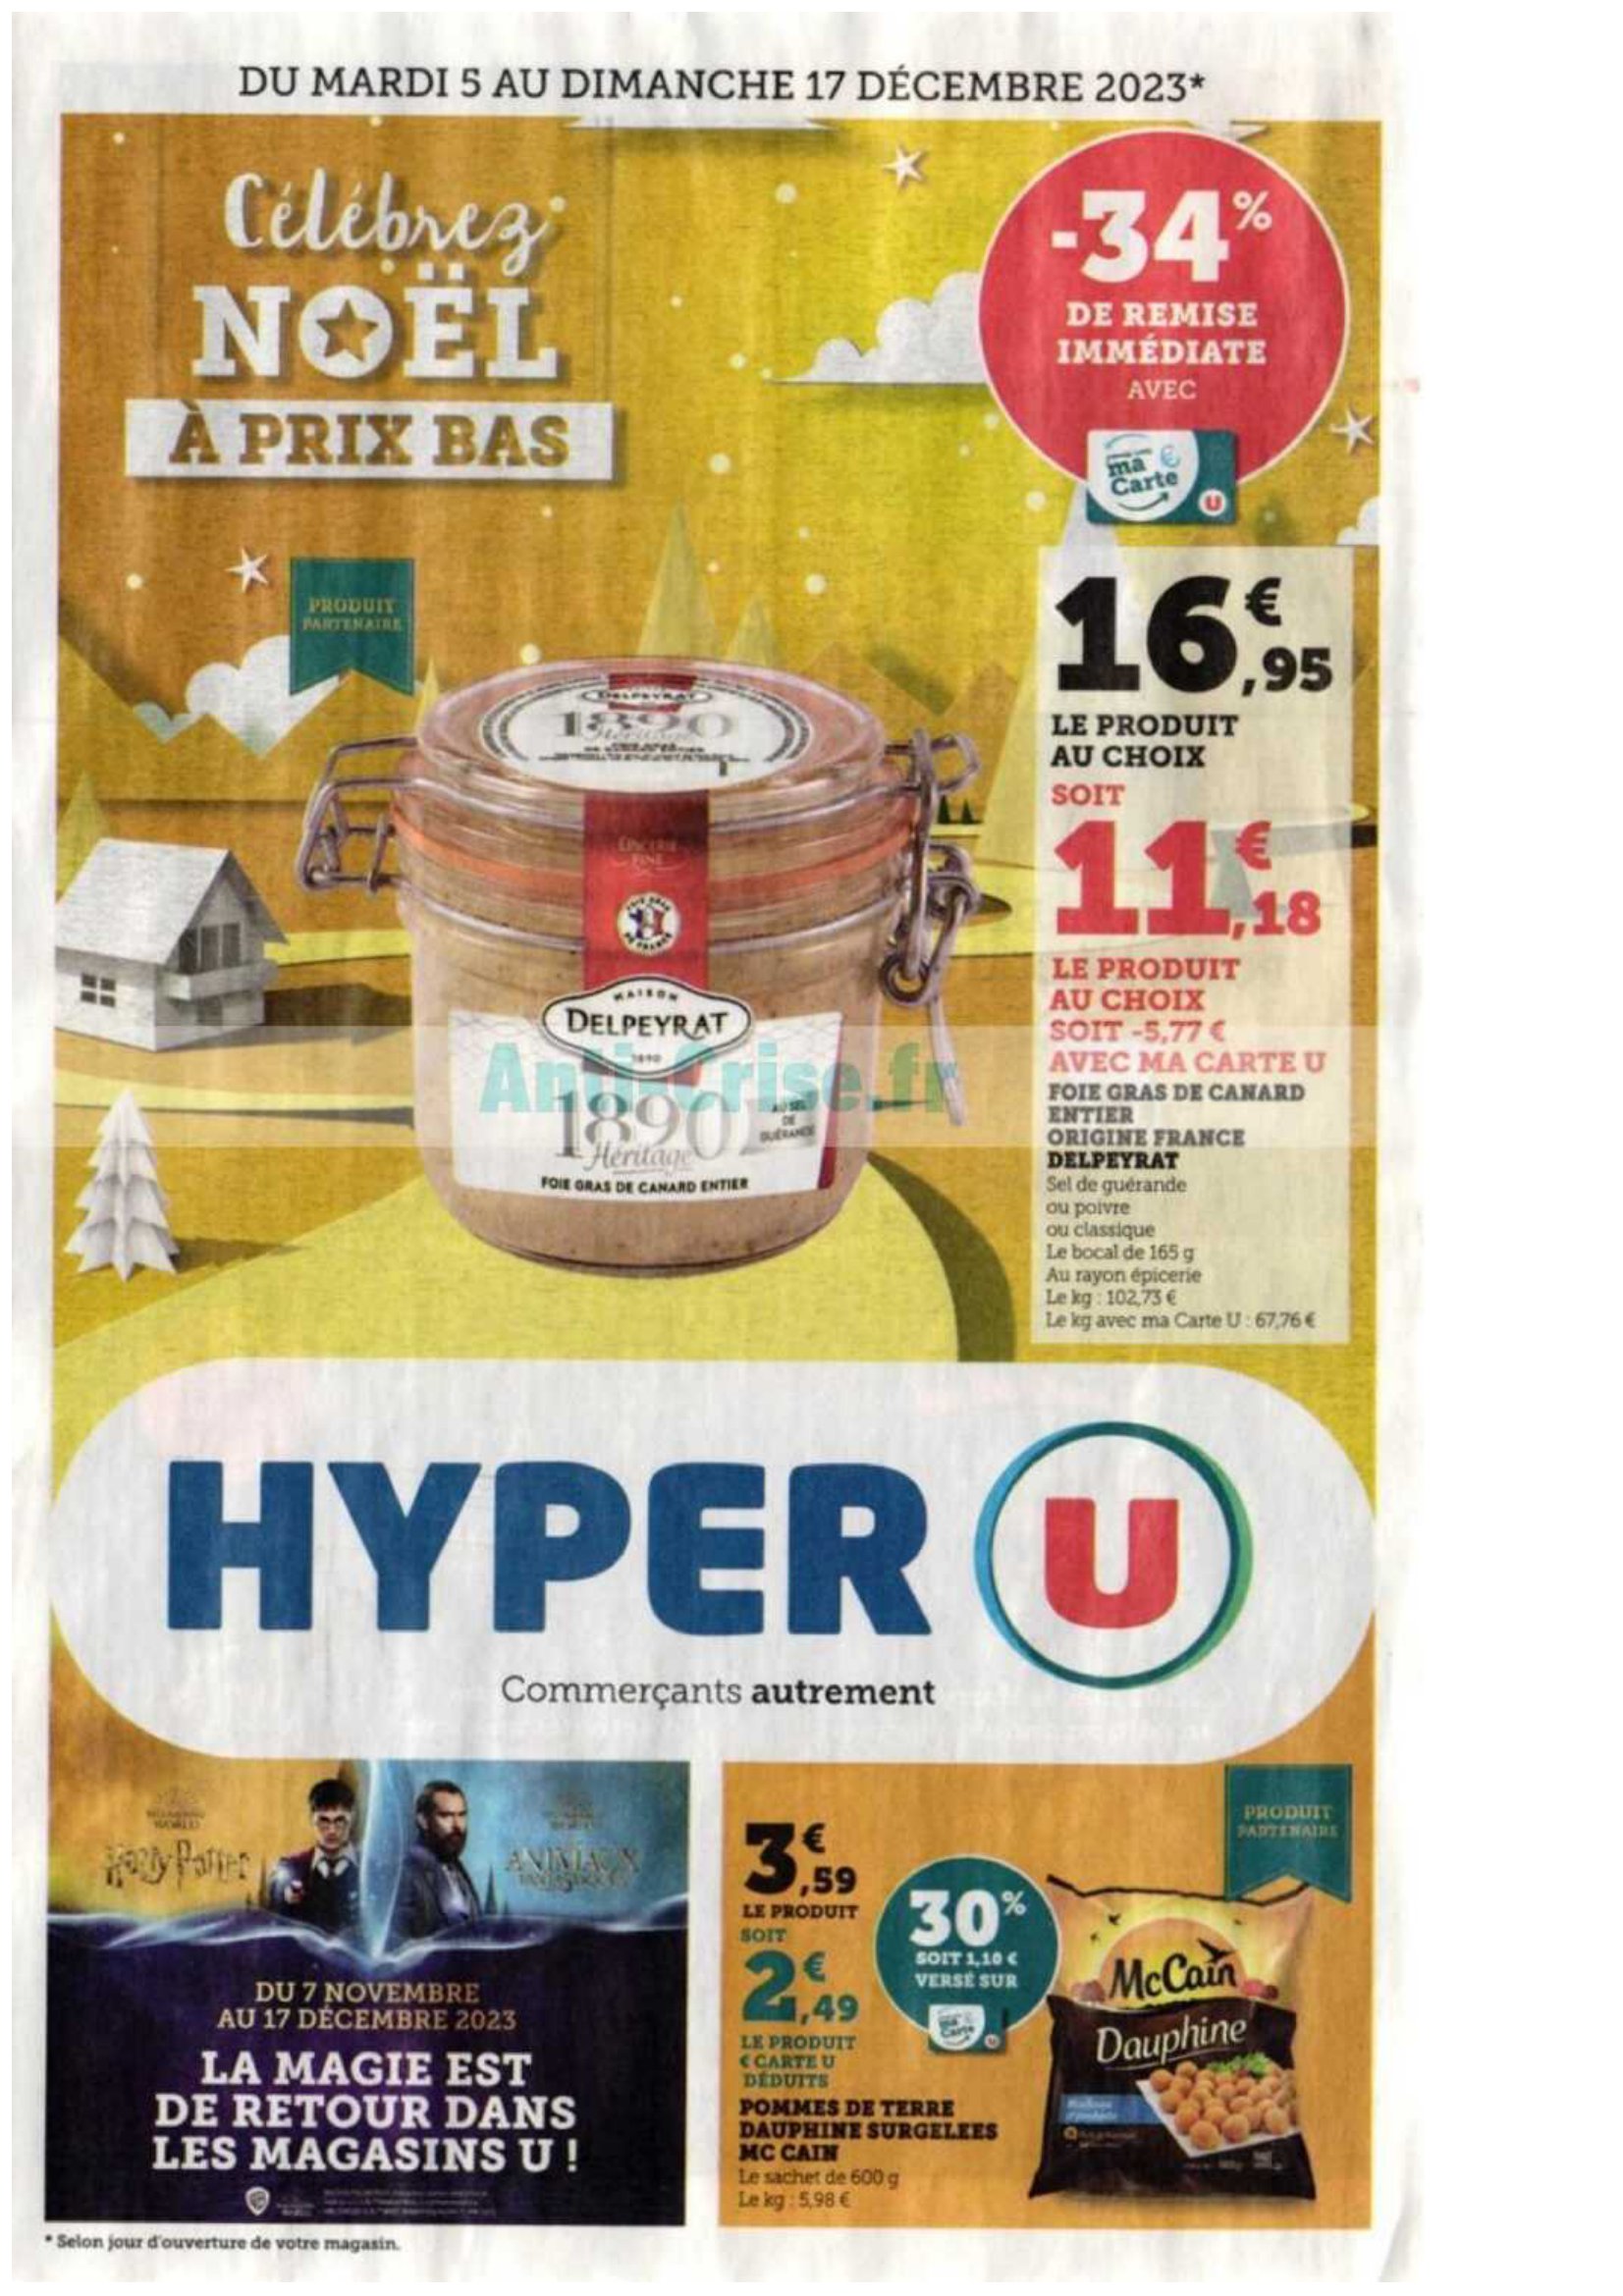 Catalogue Hyper U du 5 décembre au 17 décembre, 2023 1 – hyper u 5 17 01